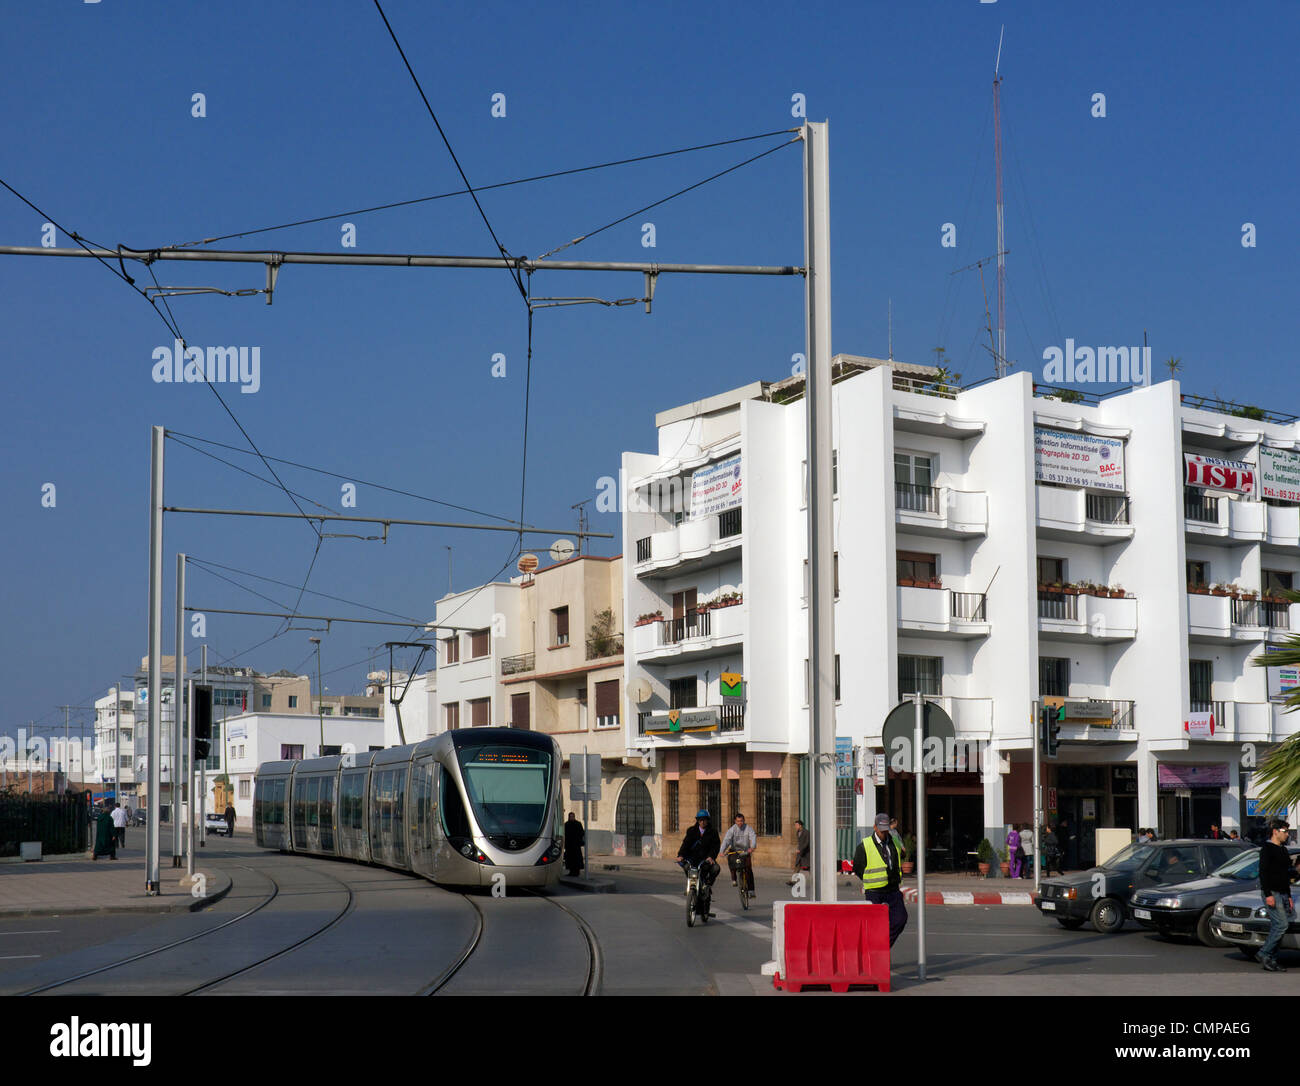 Rabat Stadt mit Straßenbahn, Nord-West-Marokko. Rabat Hauptstadt und drittgrößte Stadt des Königreichs Marokko Stockfoto